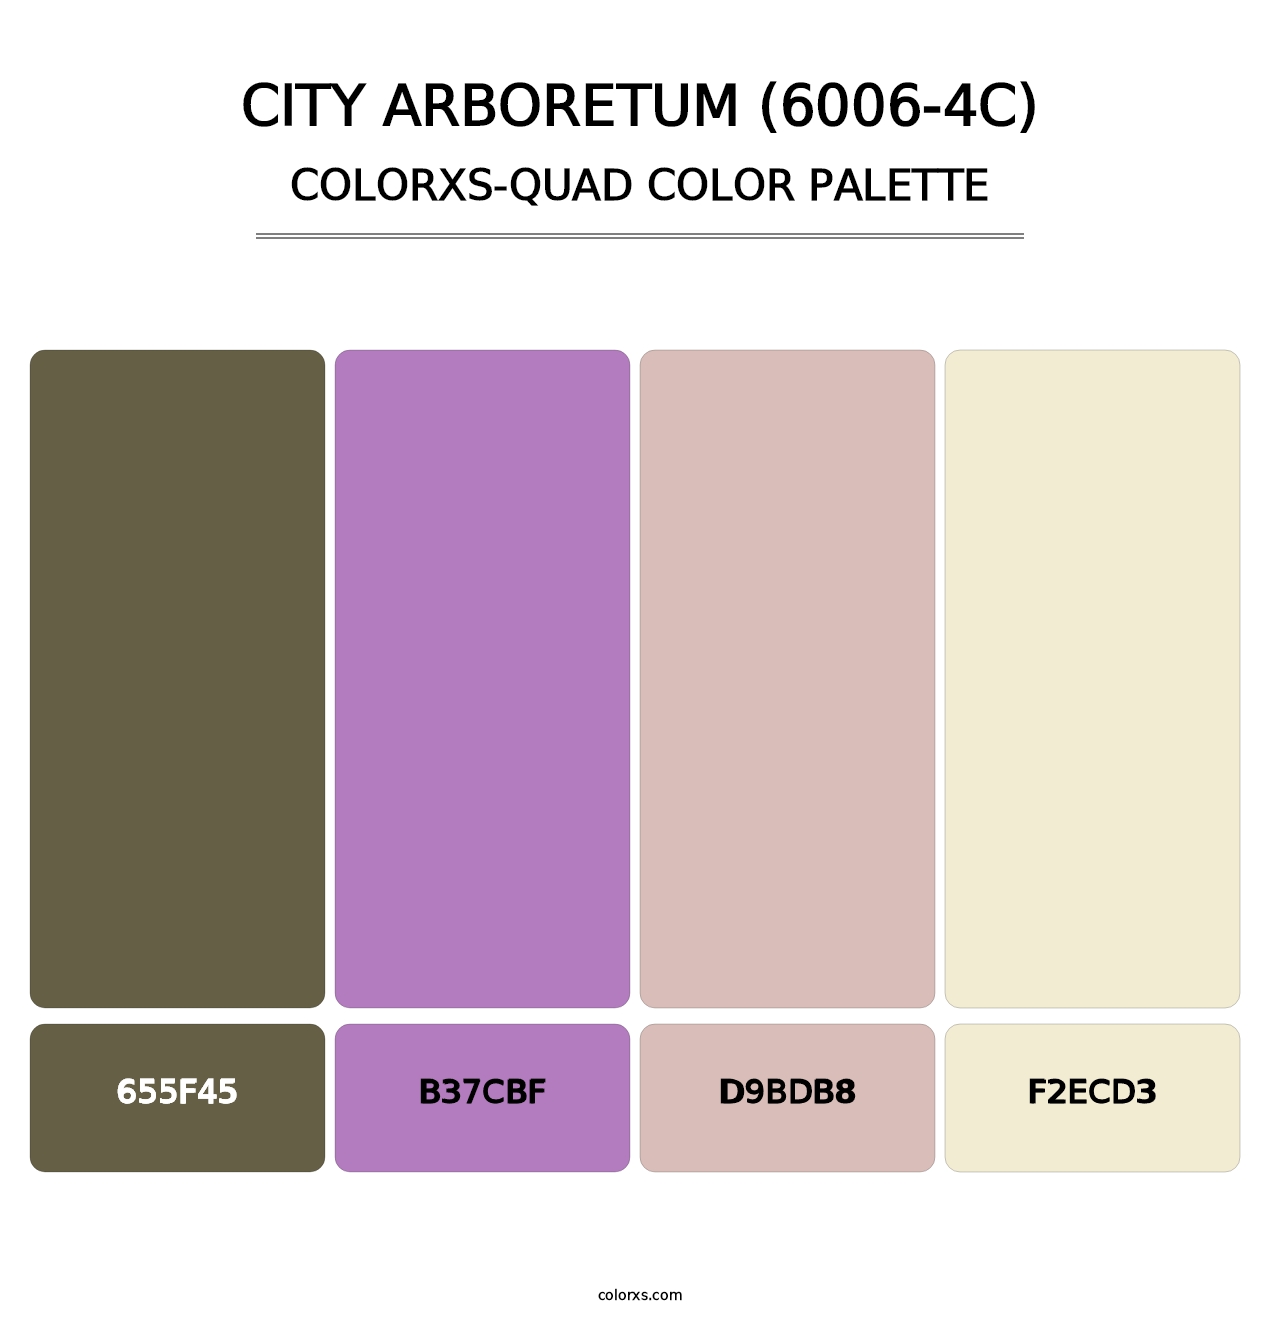 City Arboretum (6006-4C) - Colorxs Quad Palette